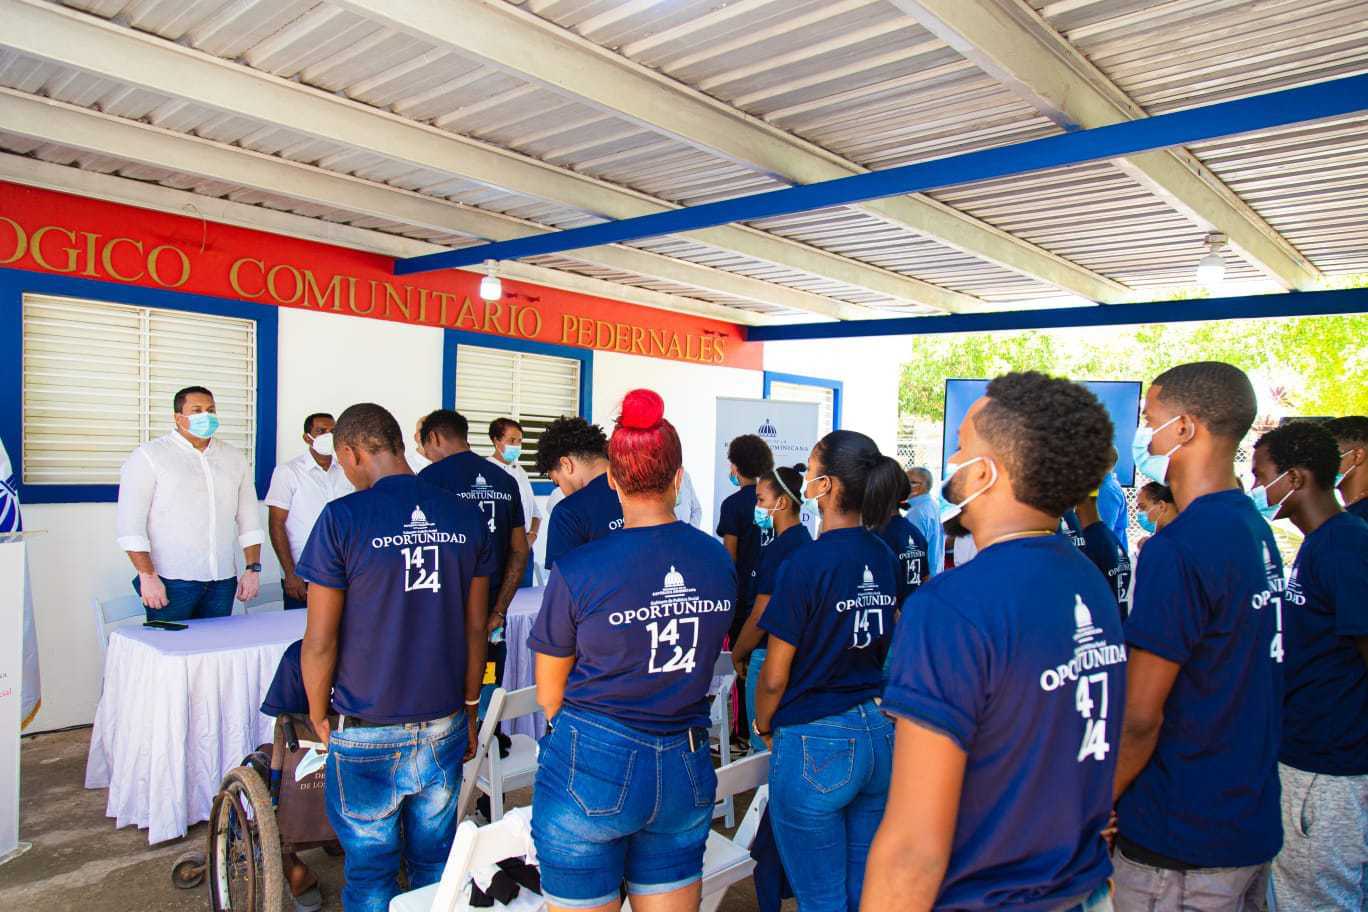 REPÚBLICA DOMINICANA: Programa Oportunidad 14-24 garantiza esperanza de empleos para jóvenes de la Región Sur del país